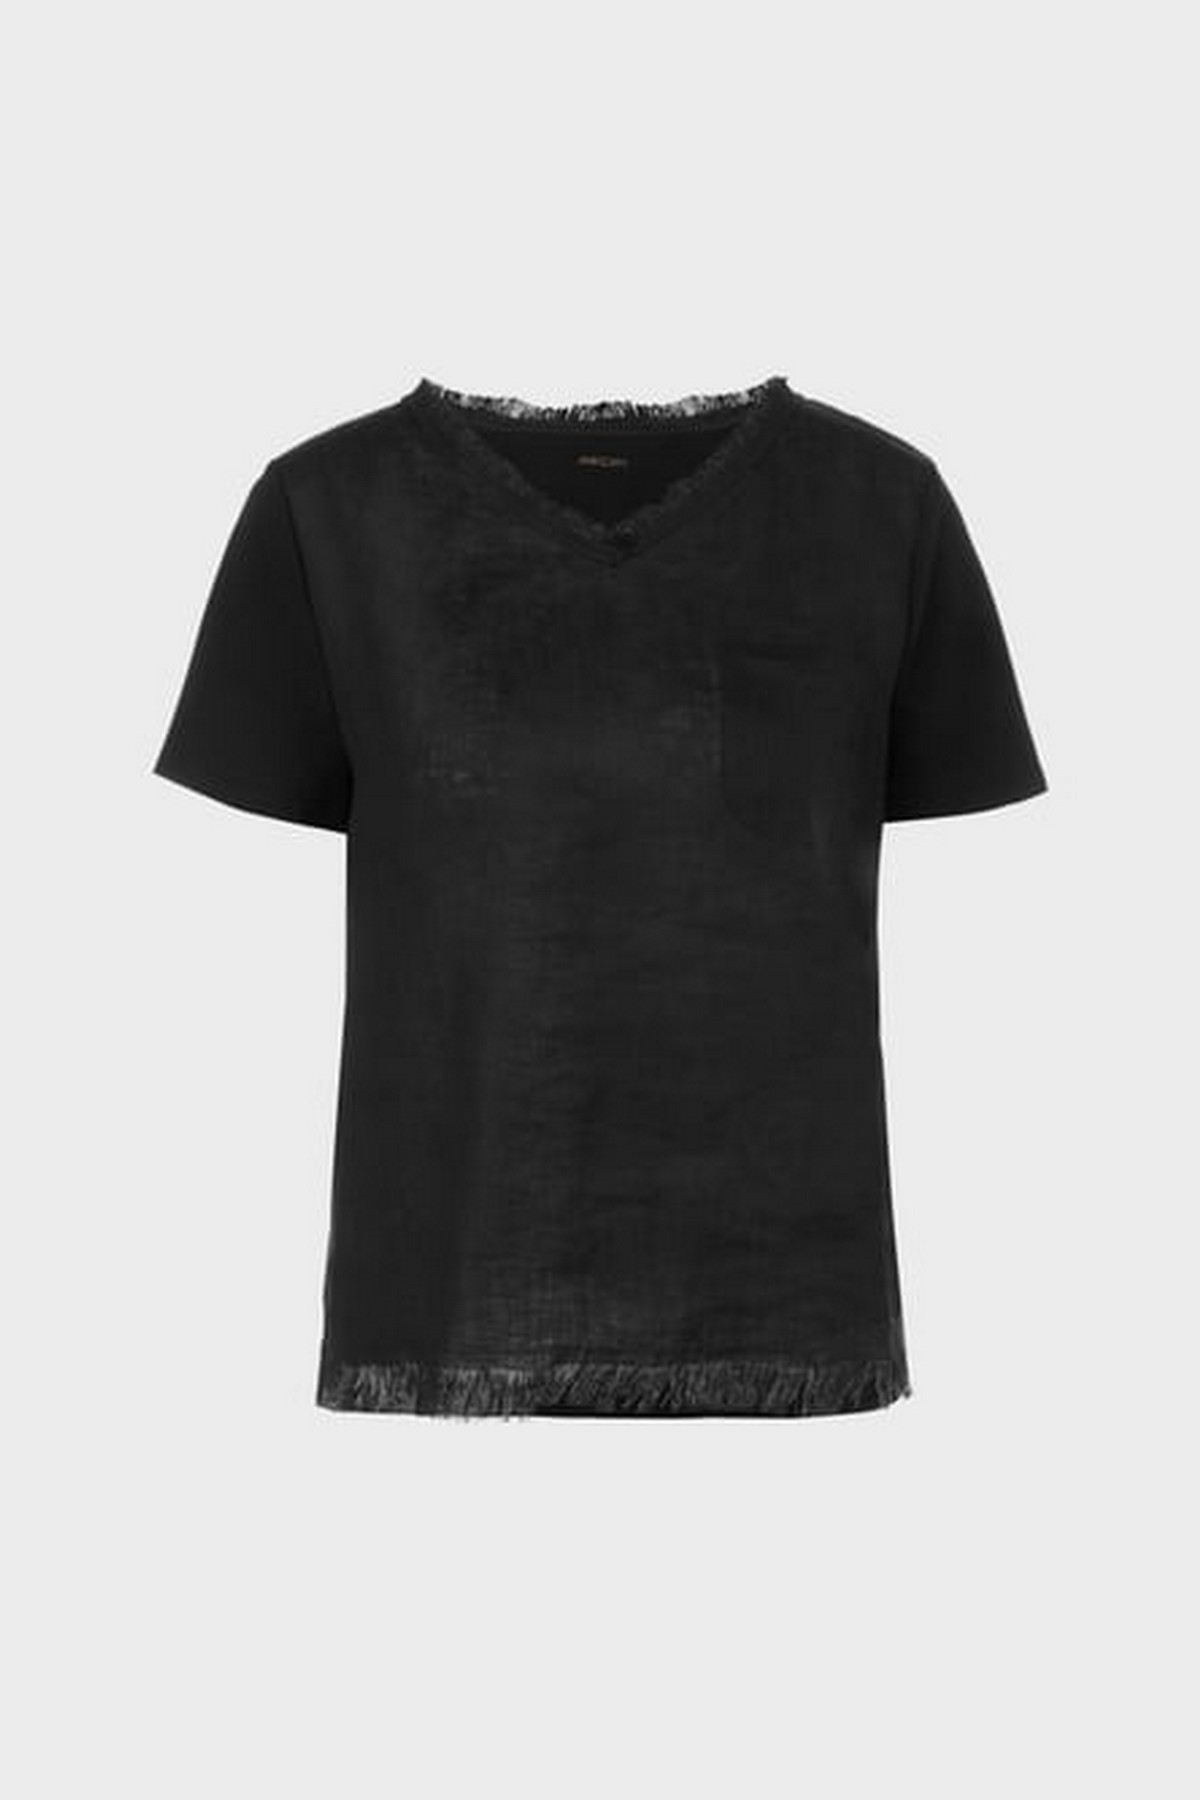 T-shirt V met zakje in de kleur zwart van het merk Marc Cain Collections